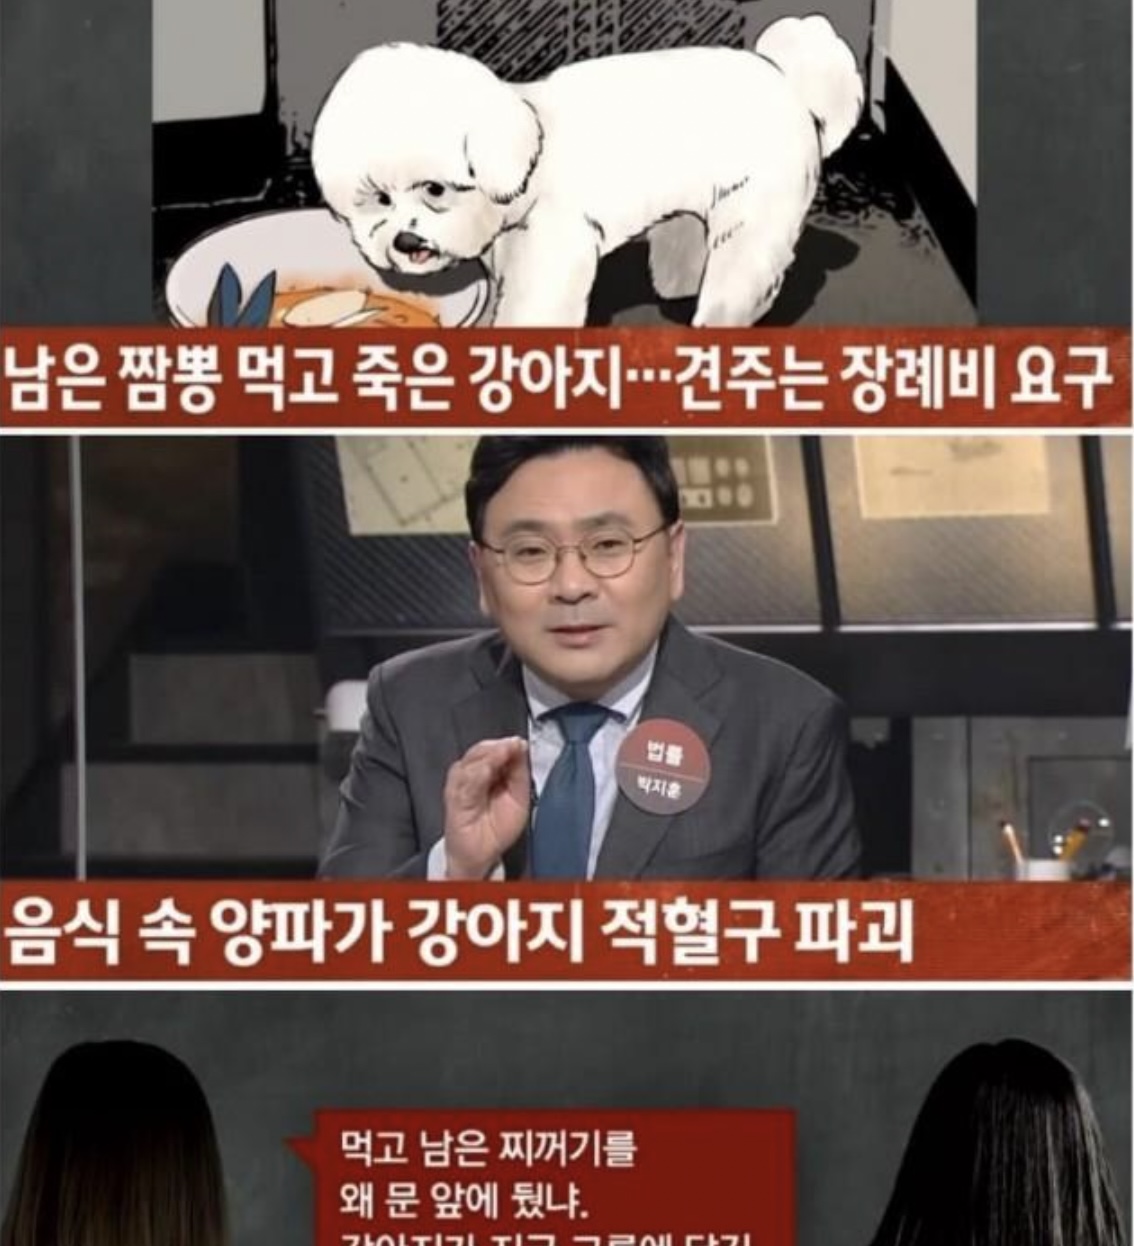 0 12.jpg - 뉴스까지 나온 남은 짬뽕 훔쳐먹고 죽은 개 논란..